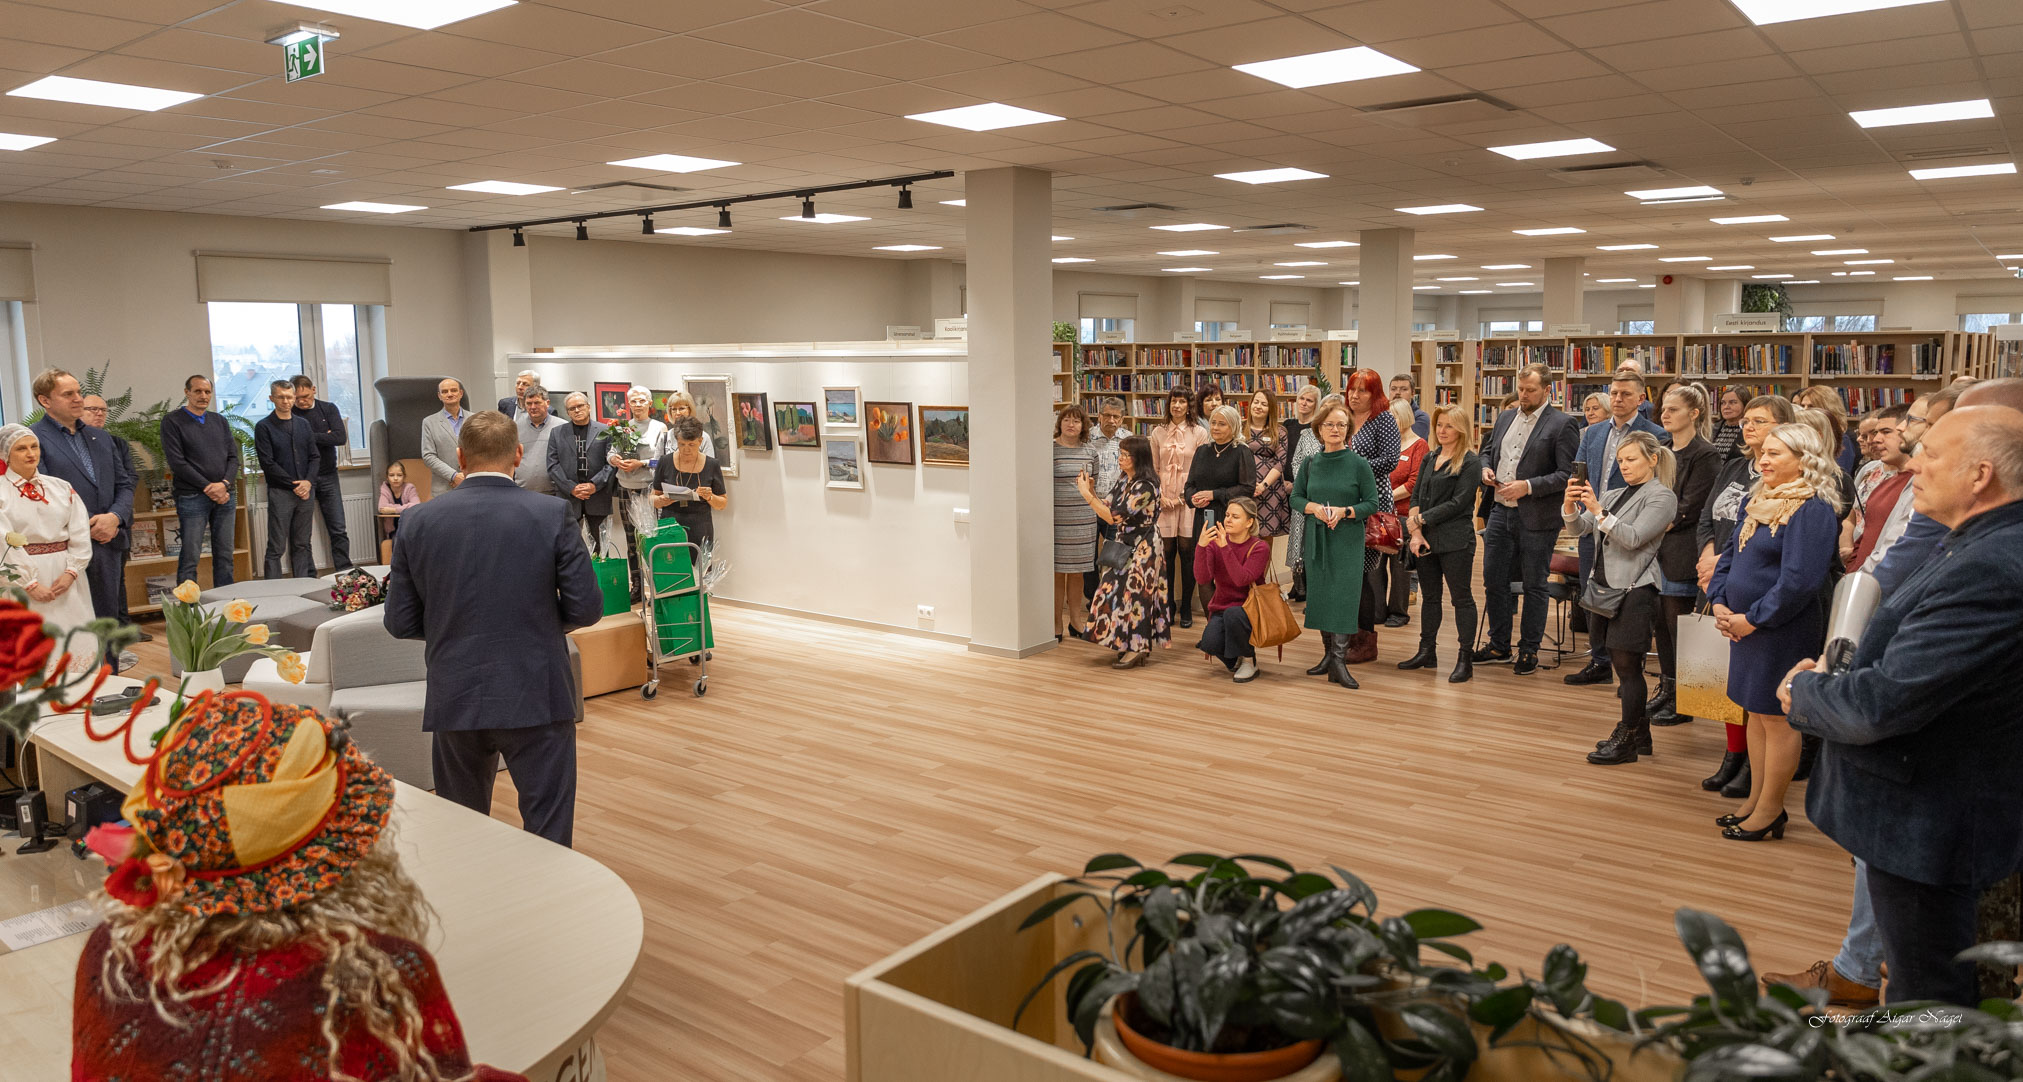 FOTOD JA VIDEO Võrus avati keskraamatukogu rekonstrueeritud hoone FOTOD: Aigar Nagel